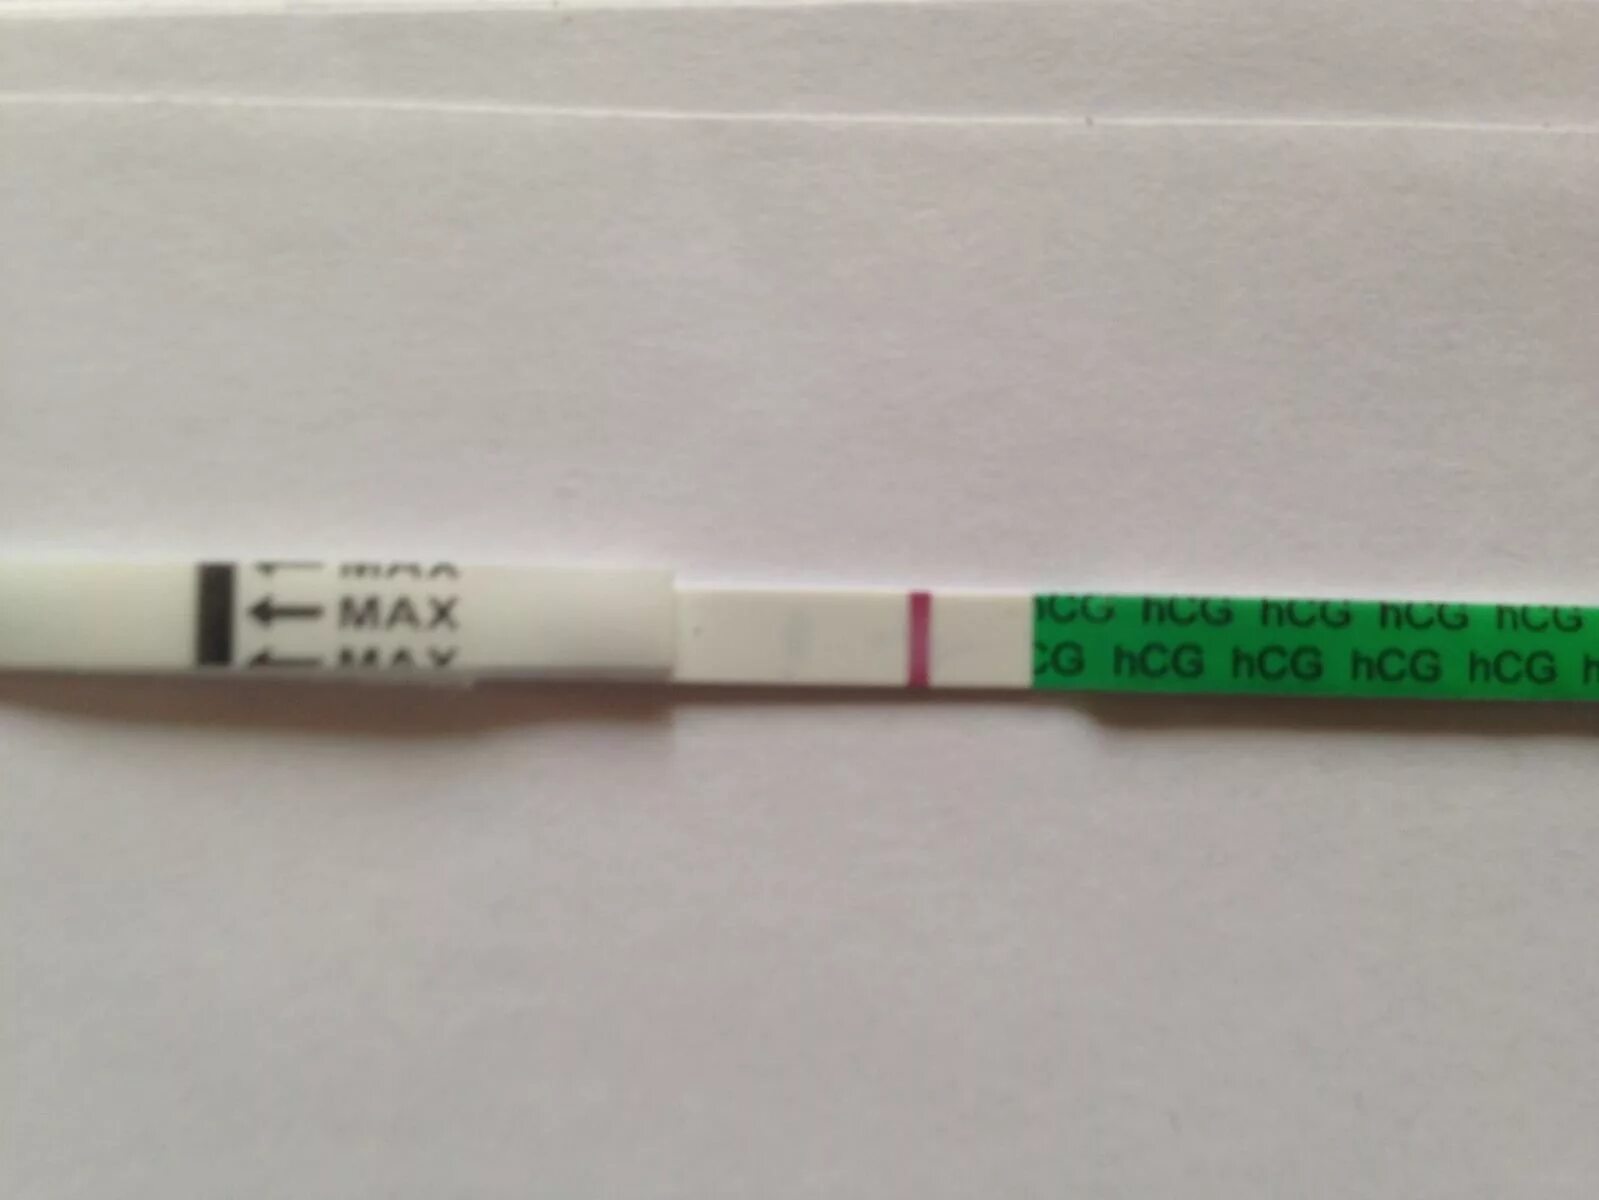 Реагент 23. 23 ДЦ тест на беременность. Реагент тест на беременность. Милатест слабоположительный. File Test положительный.